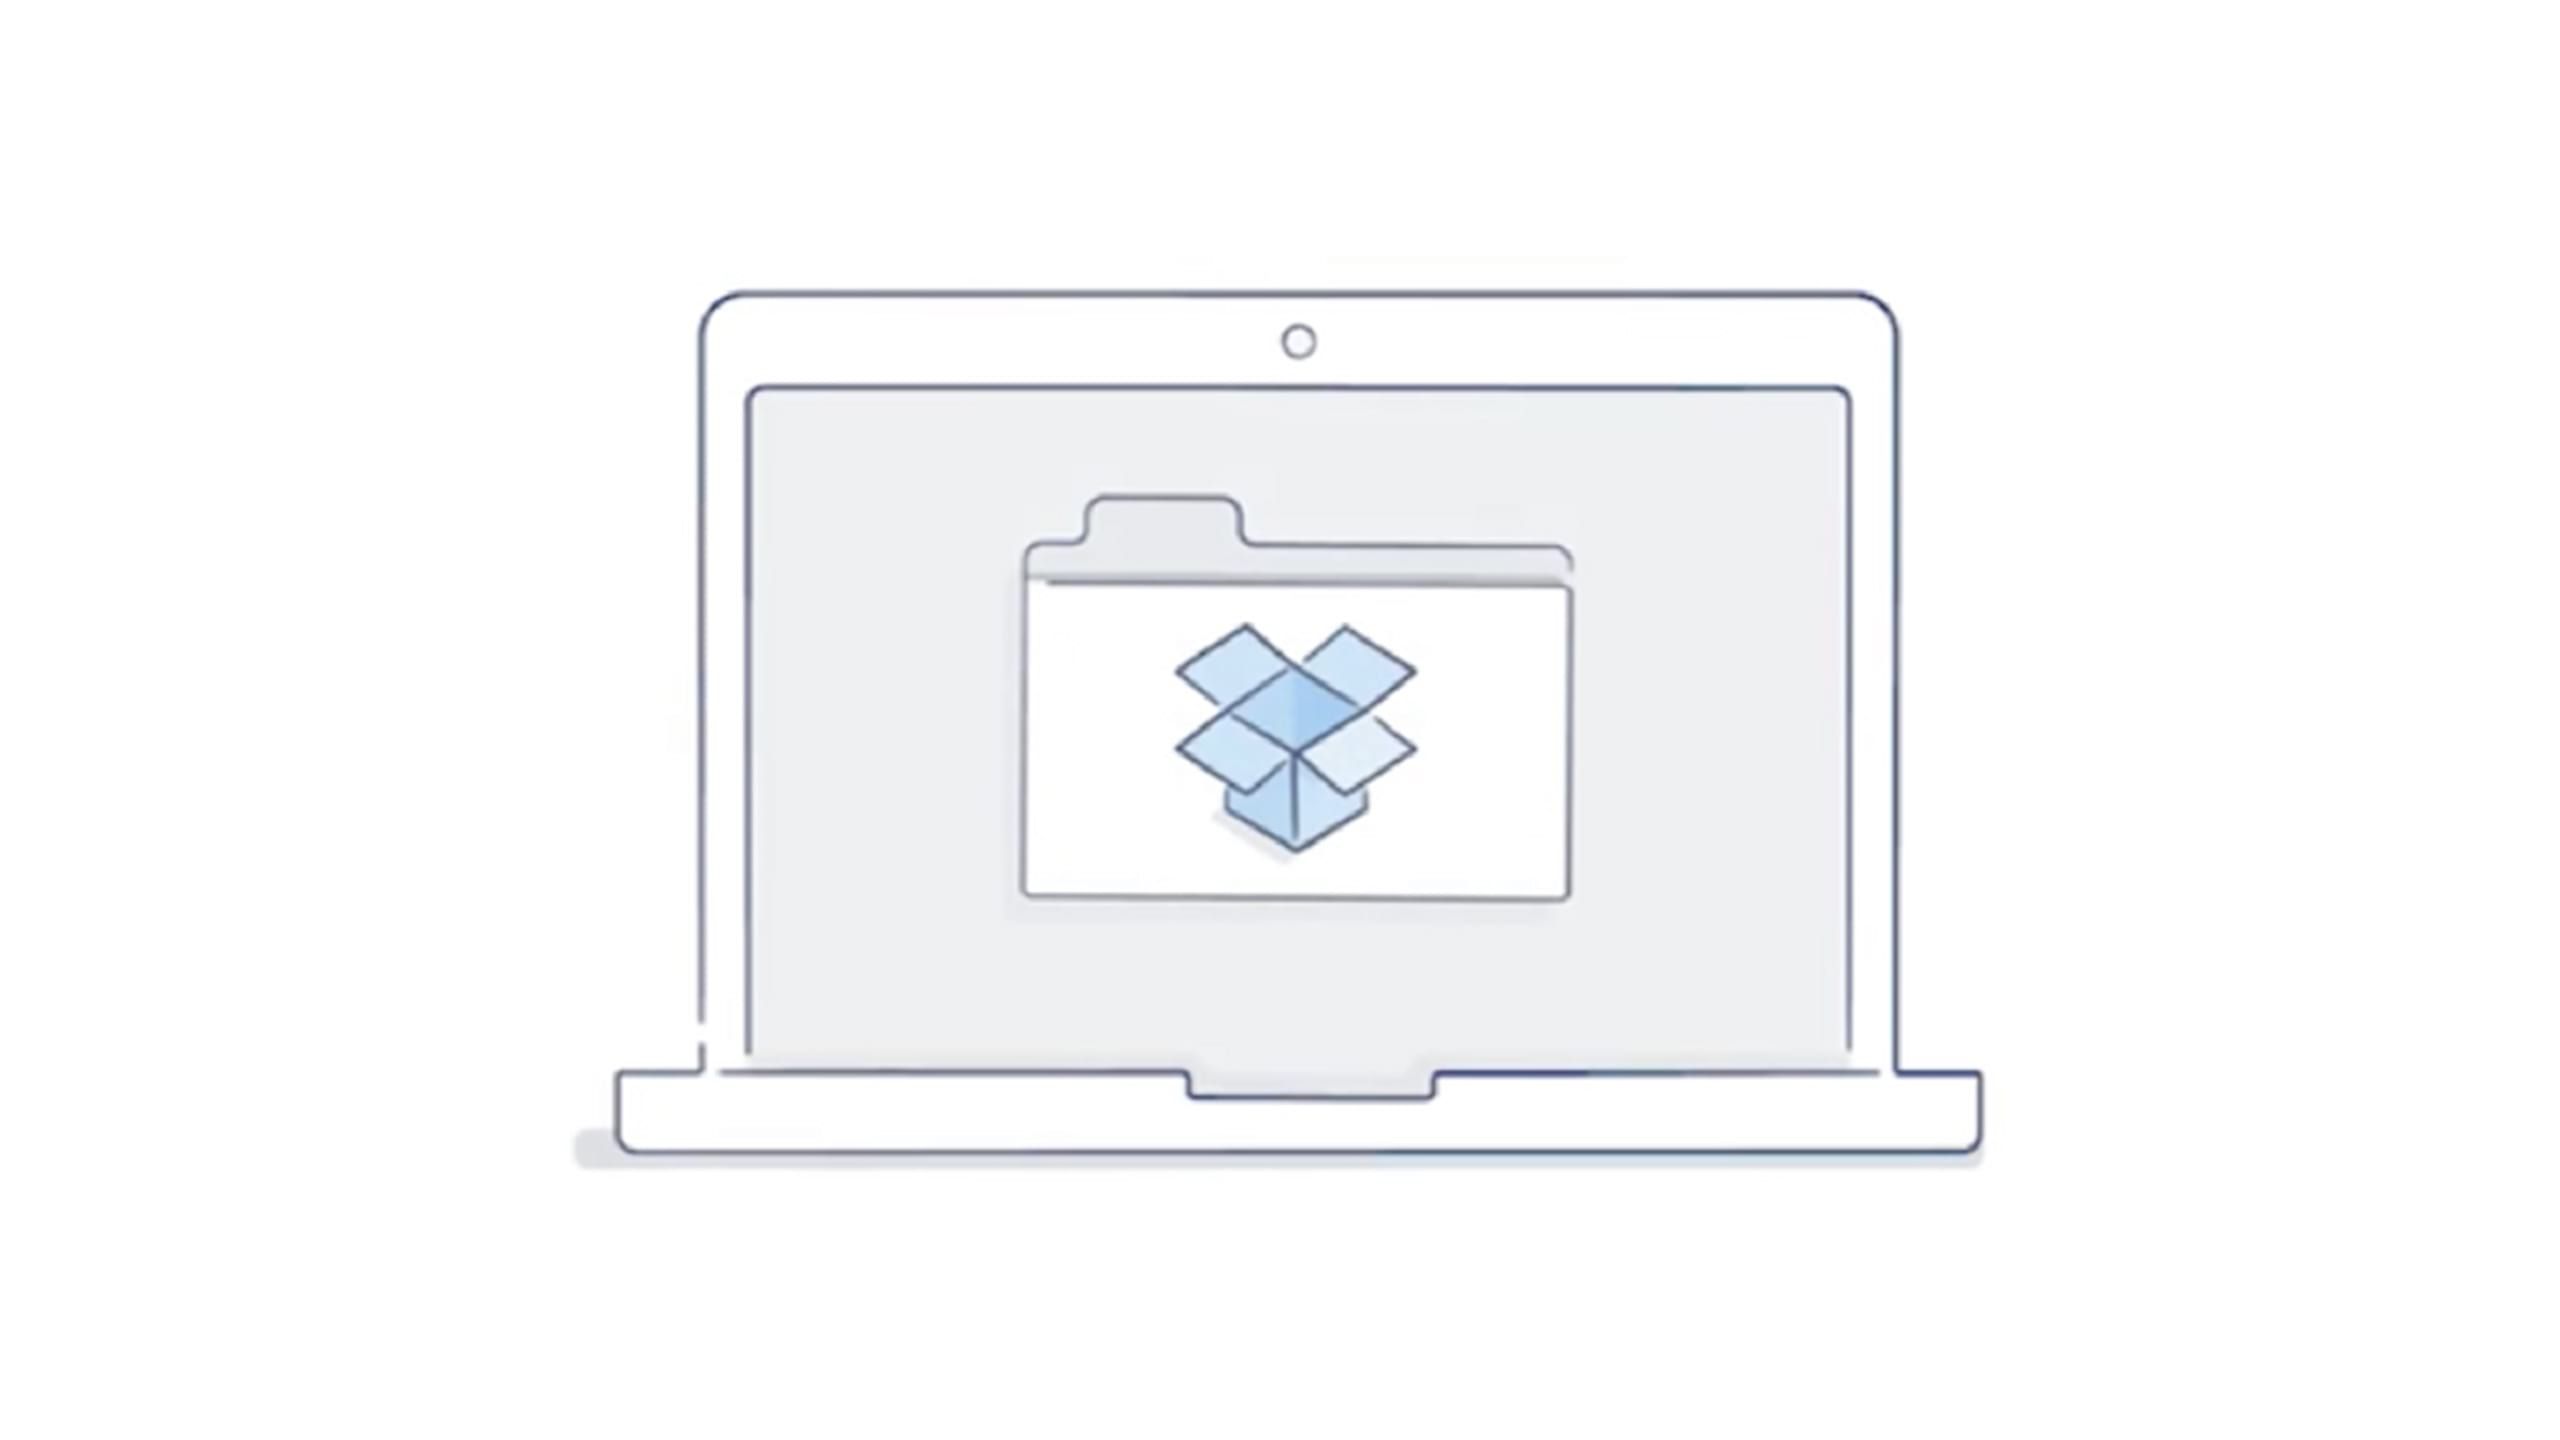 Um ícone de pasta do Dropbox exibido na tela de um laptop